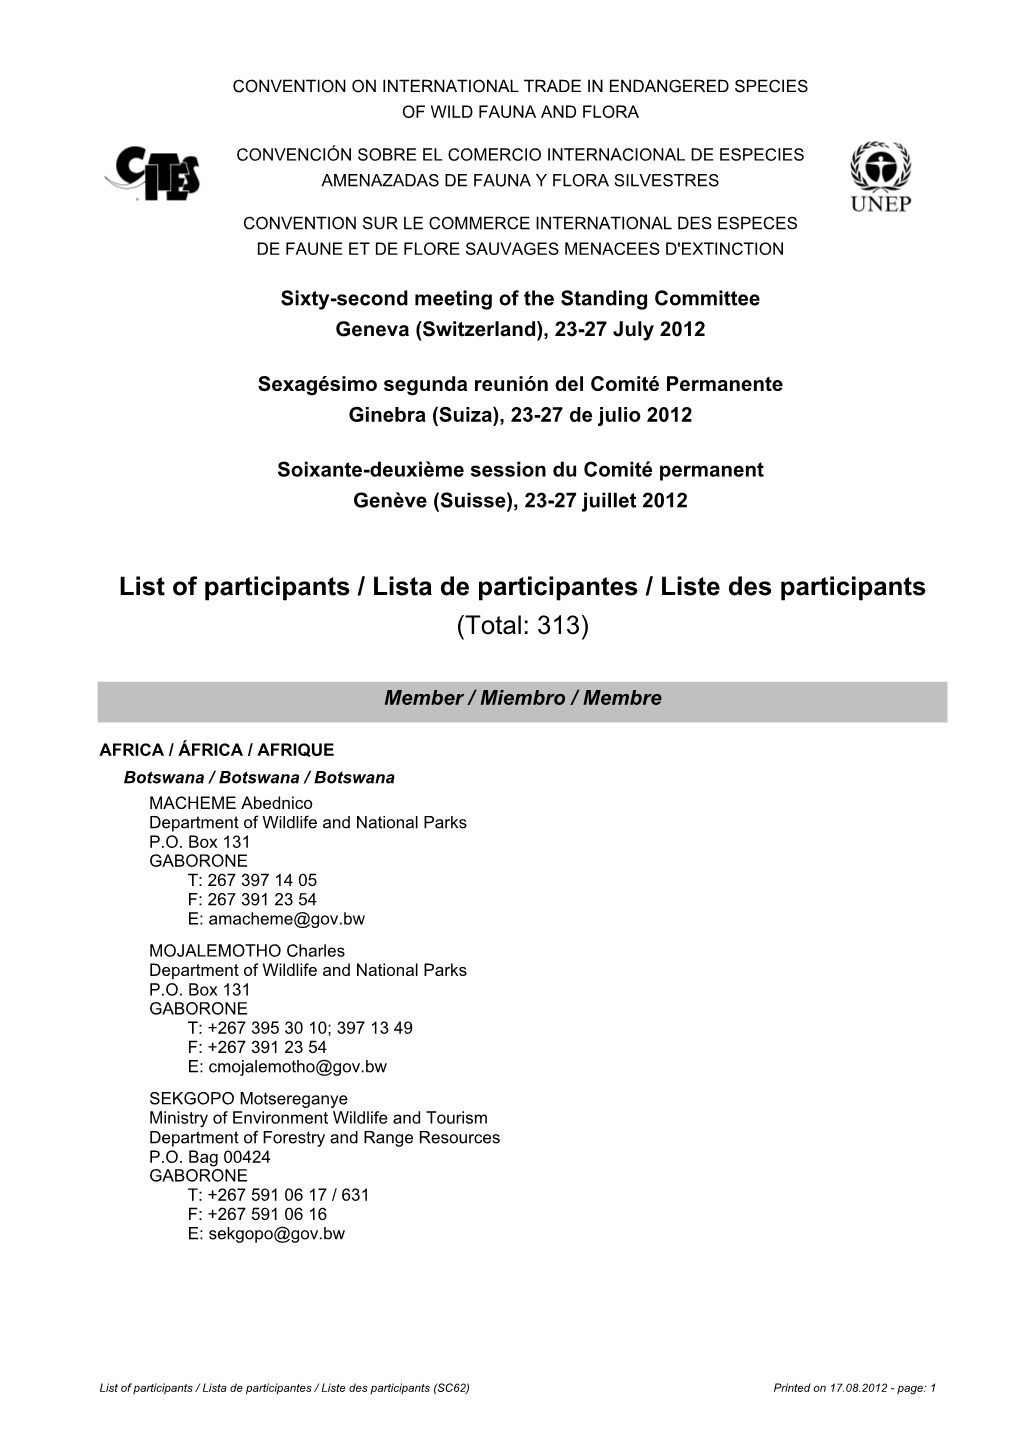 List of Participants / Lista De Participantes / Liste Des Participants (Total: 313)